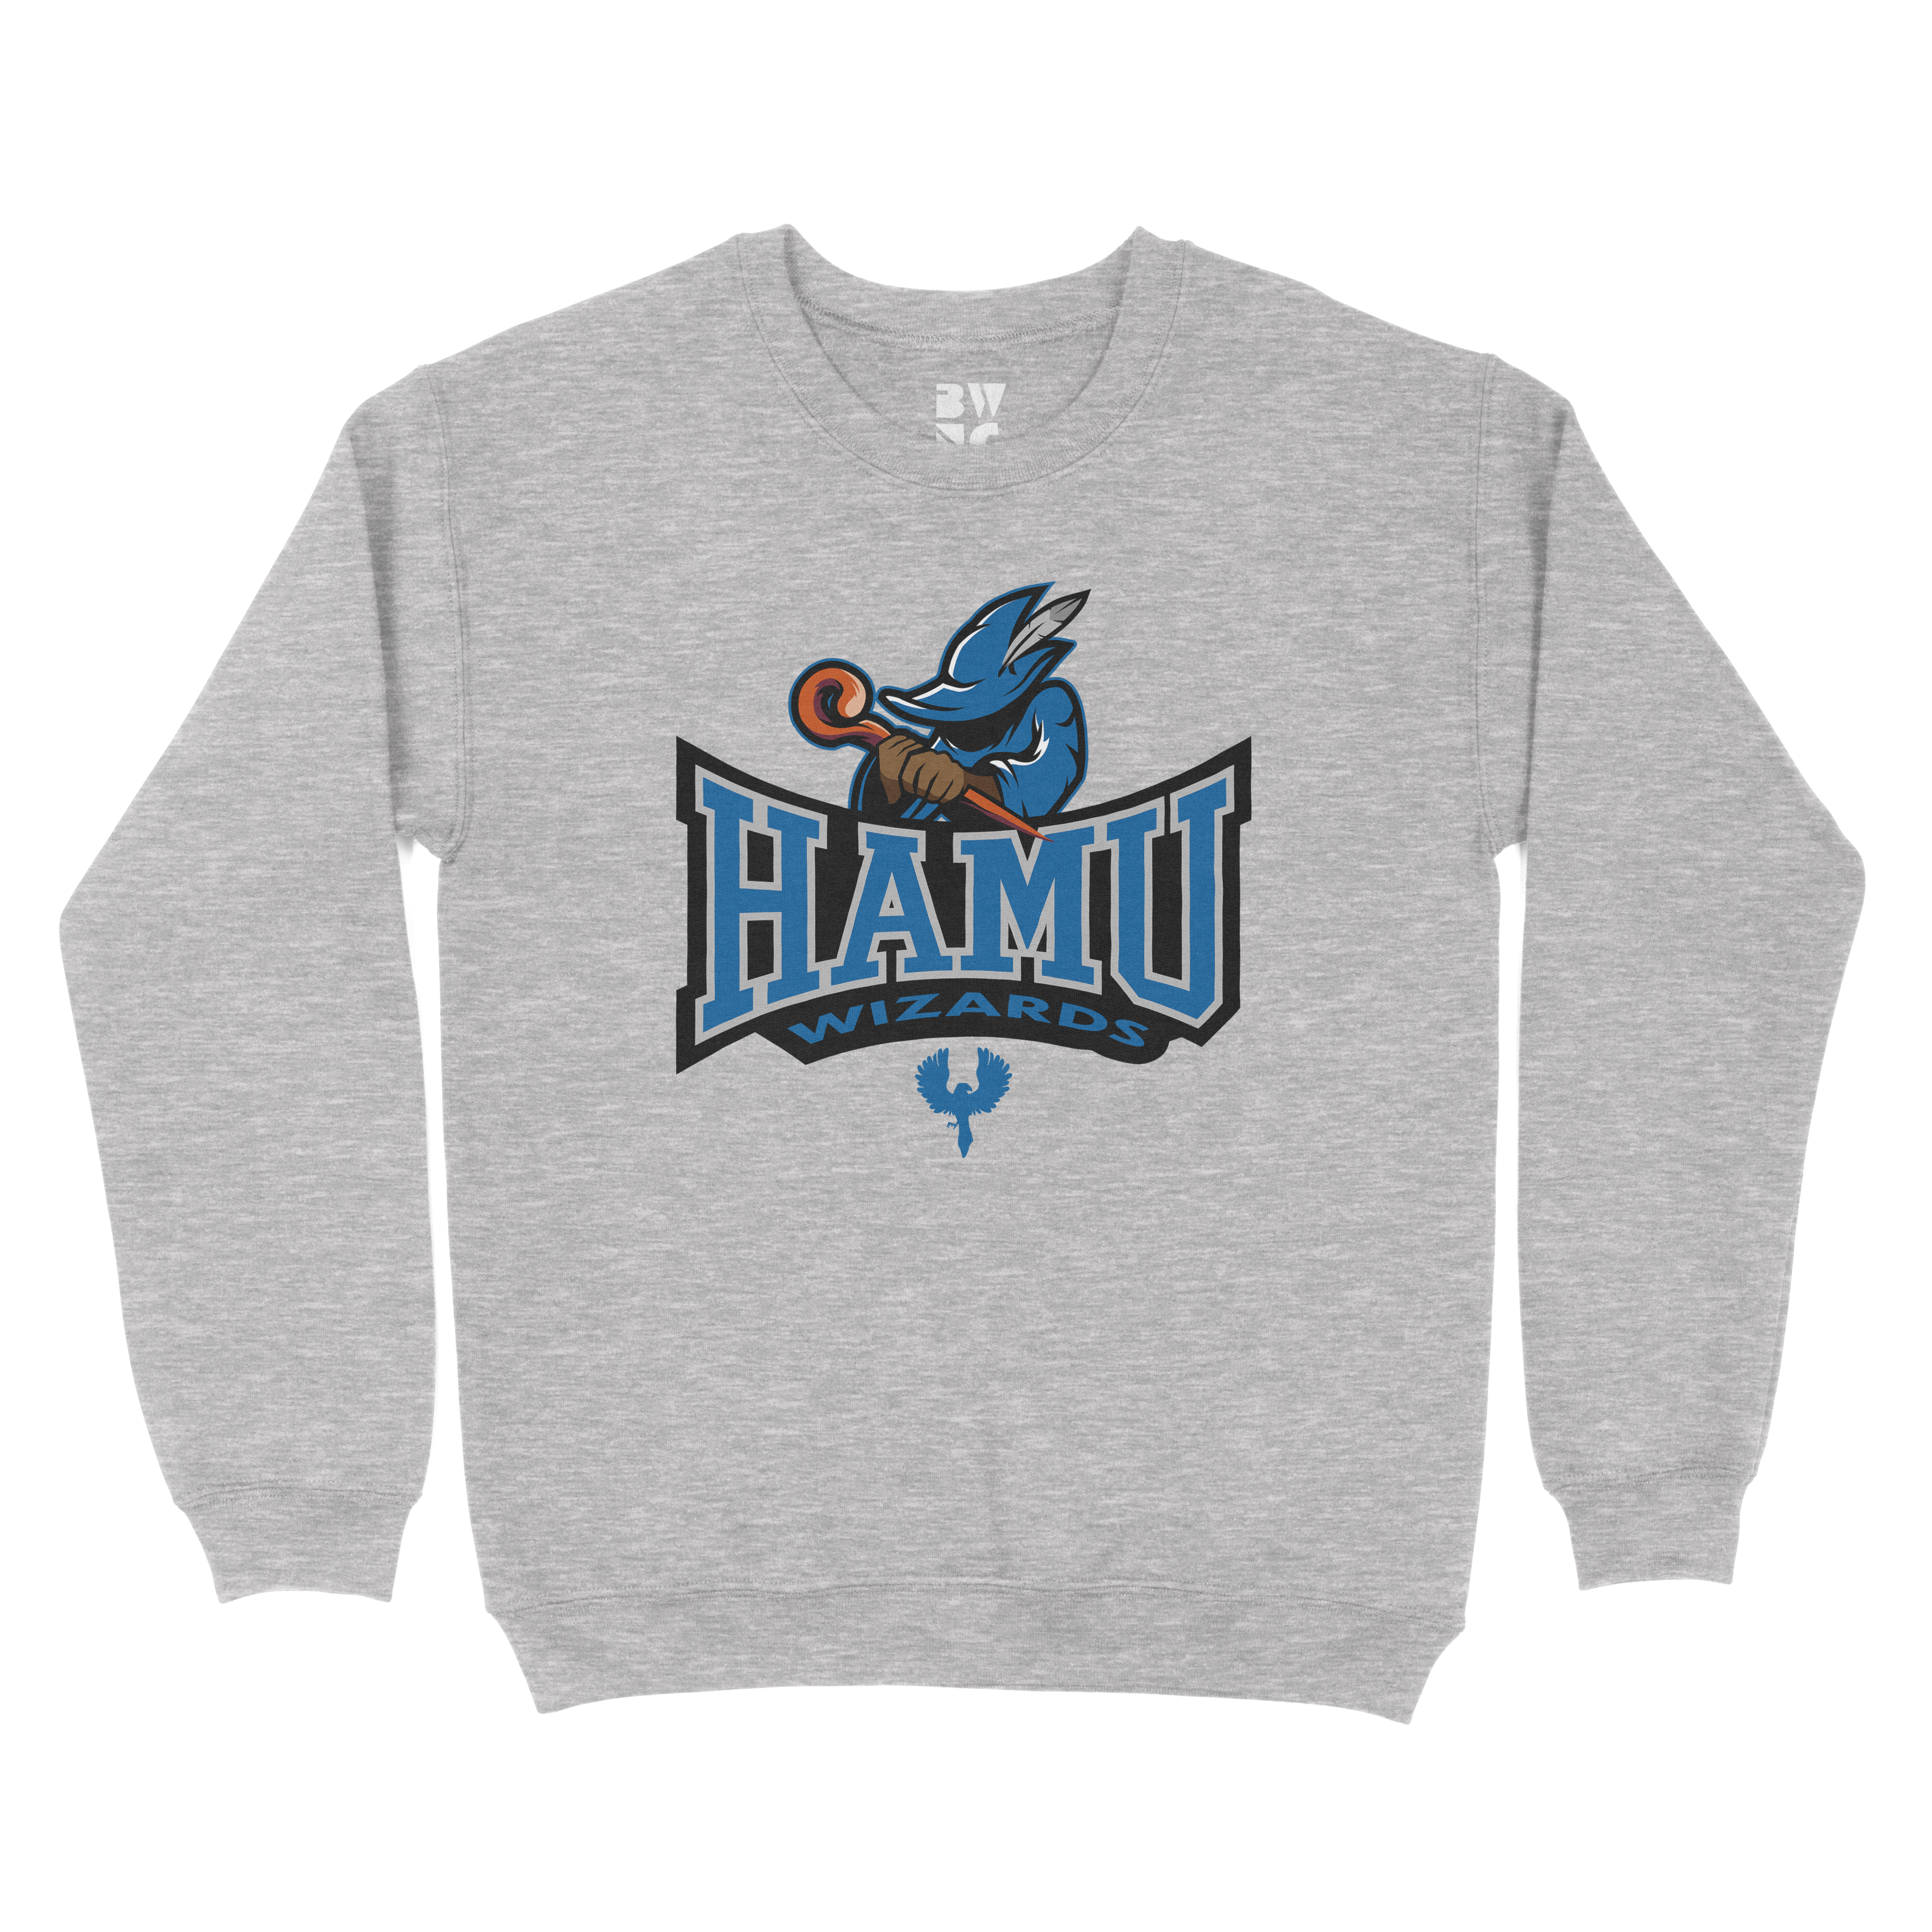 HAMU Wizards Crewneck Sweater (Blue House)